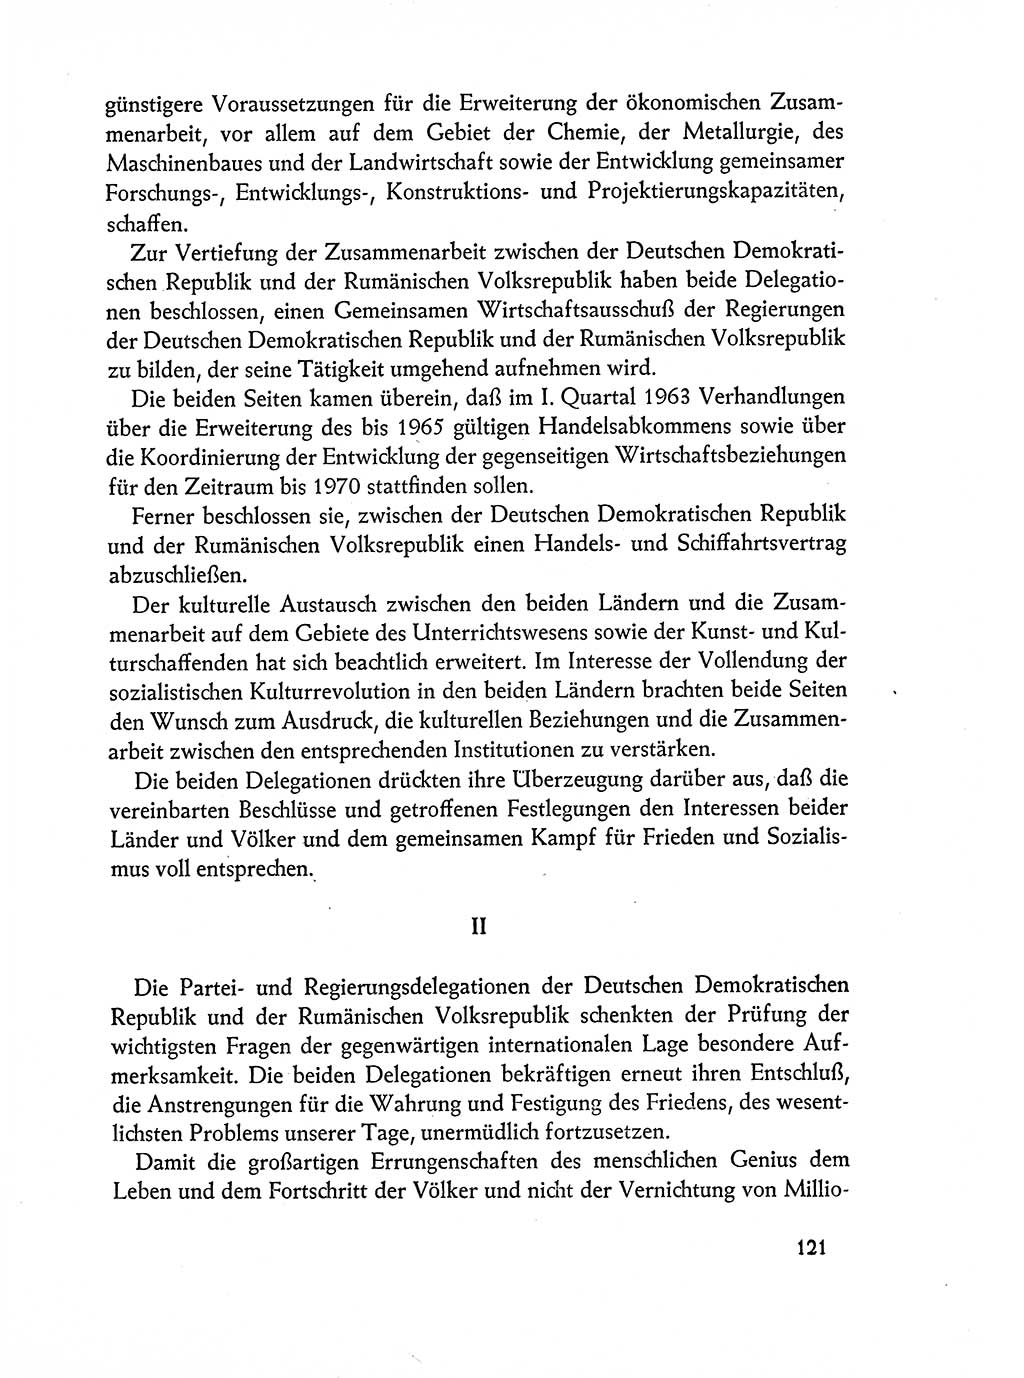 Dokumente der Sozialistischen Einheitspartei Deutschlands (SED) [Deutsche Demokratische Republik (DDR)] 1962-1963, Seite 121 (Dok. SED DDR 1962-1963, S. 121)